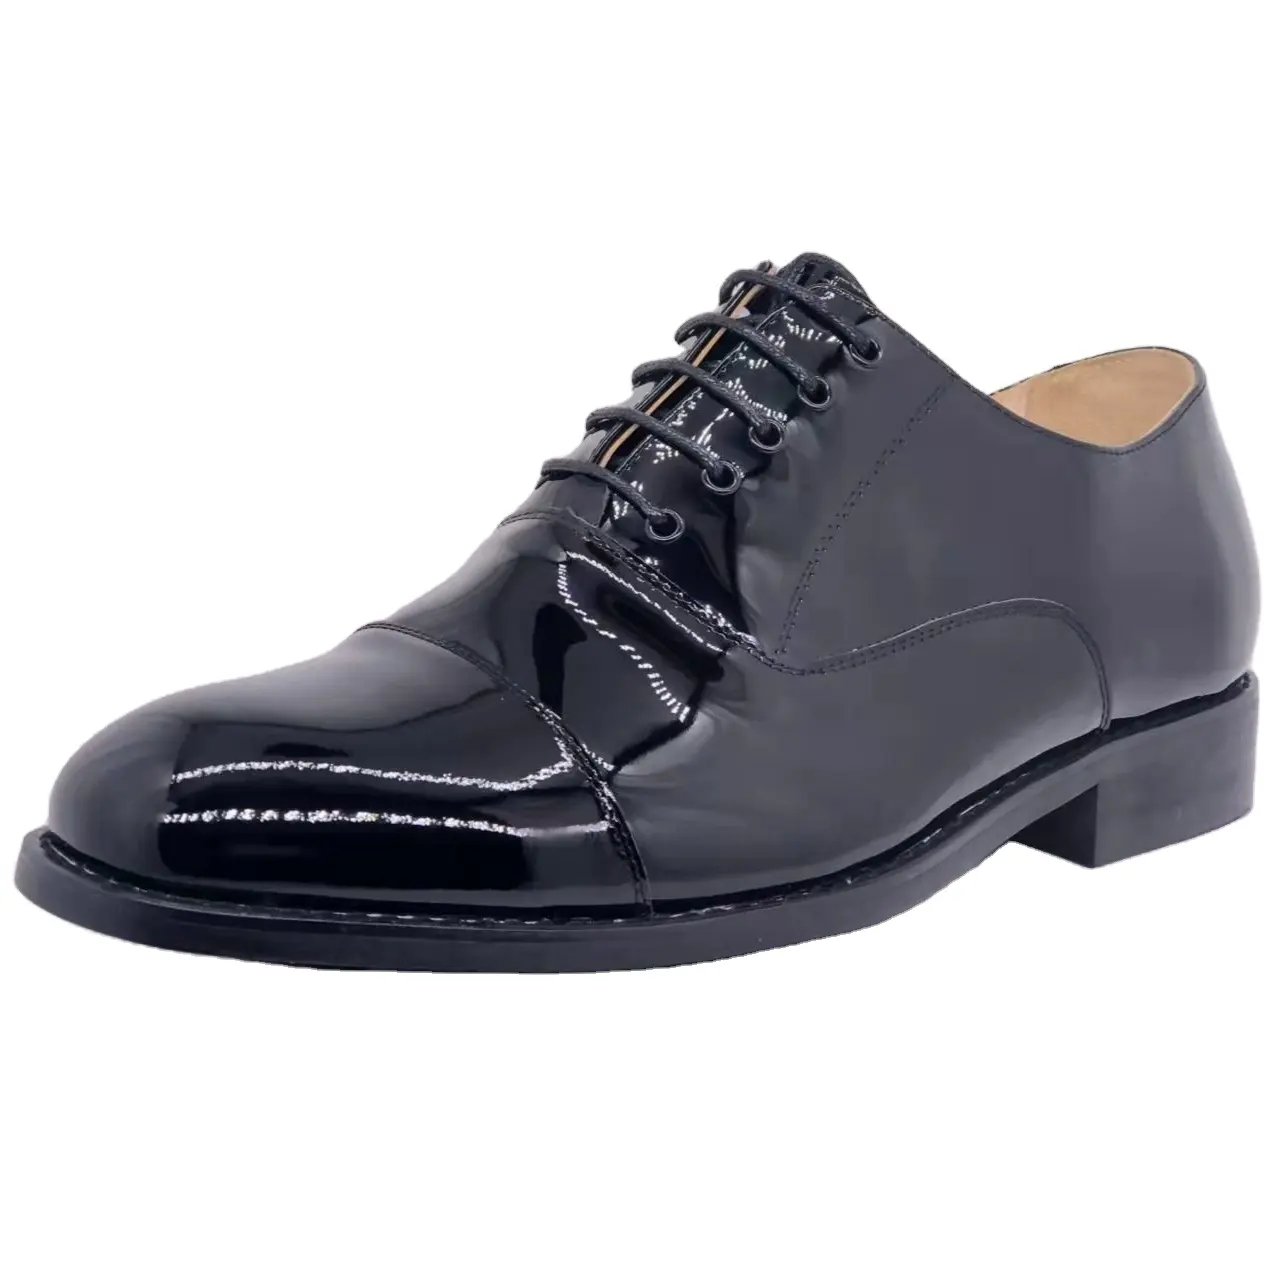 असली लेदर ऊपरी जूते काले रंग की पोशाक जूते पुरुषों के लिए उपयोग